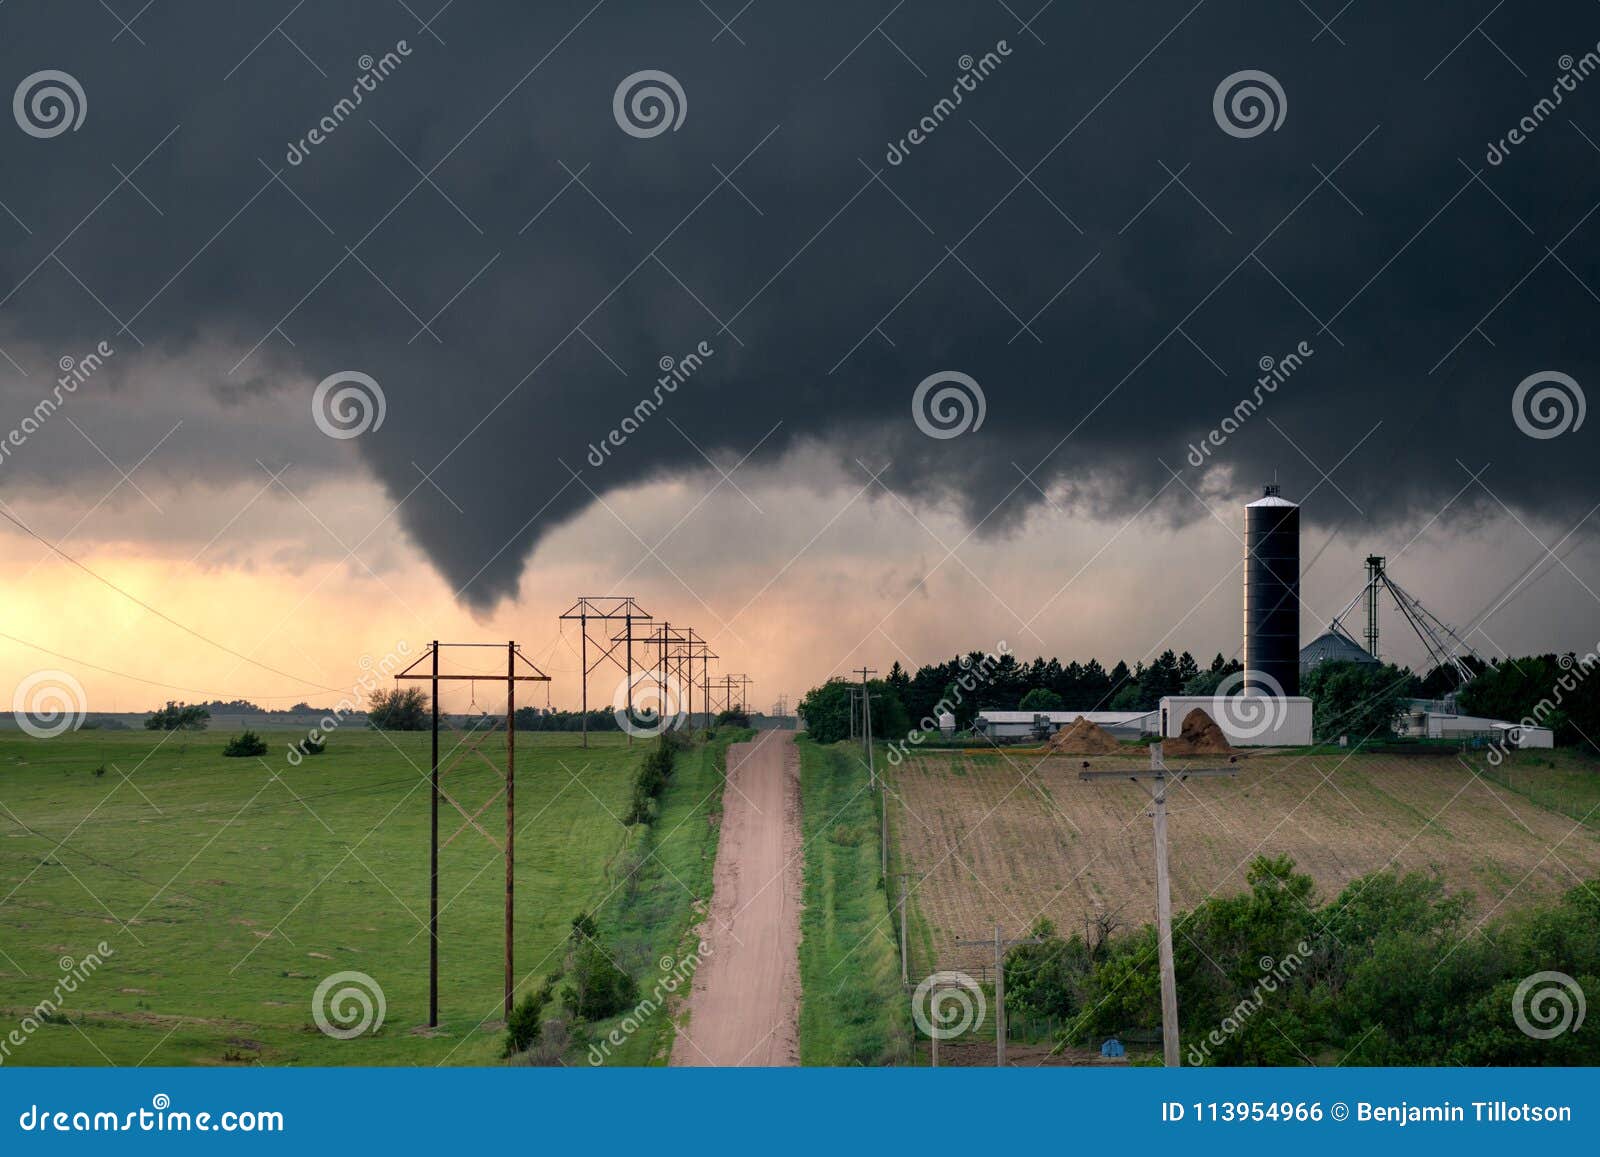 tornado in central nebraska